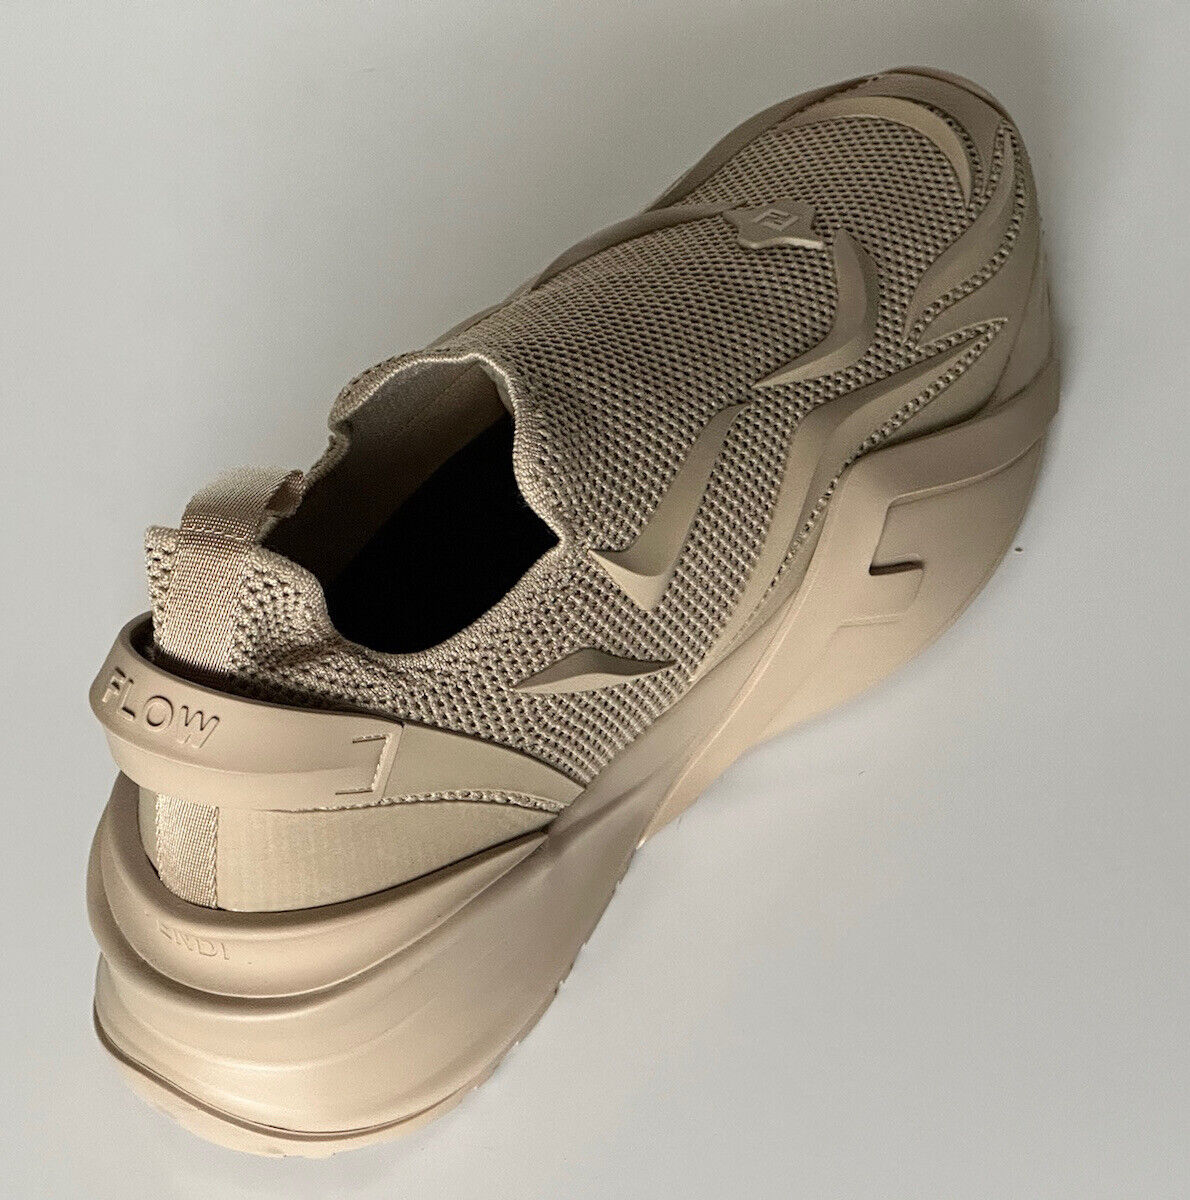 Мужские бежевые кроссовки Fendi Flow NIB 1050 из ткани 12 США (45 евро) 7E1504 Италия 